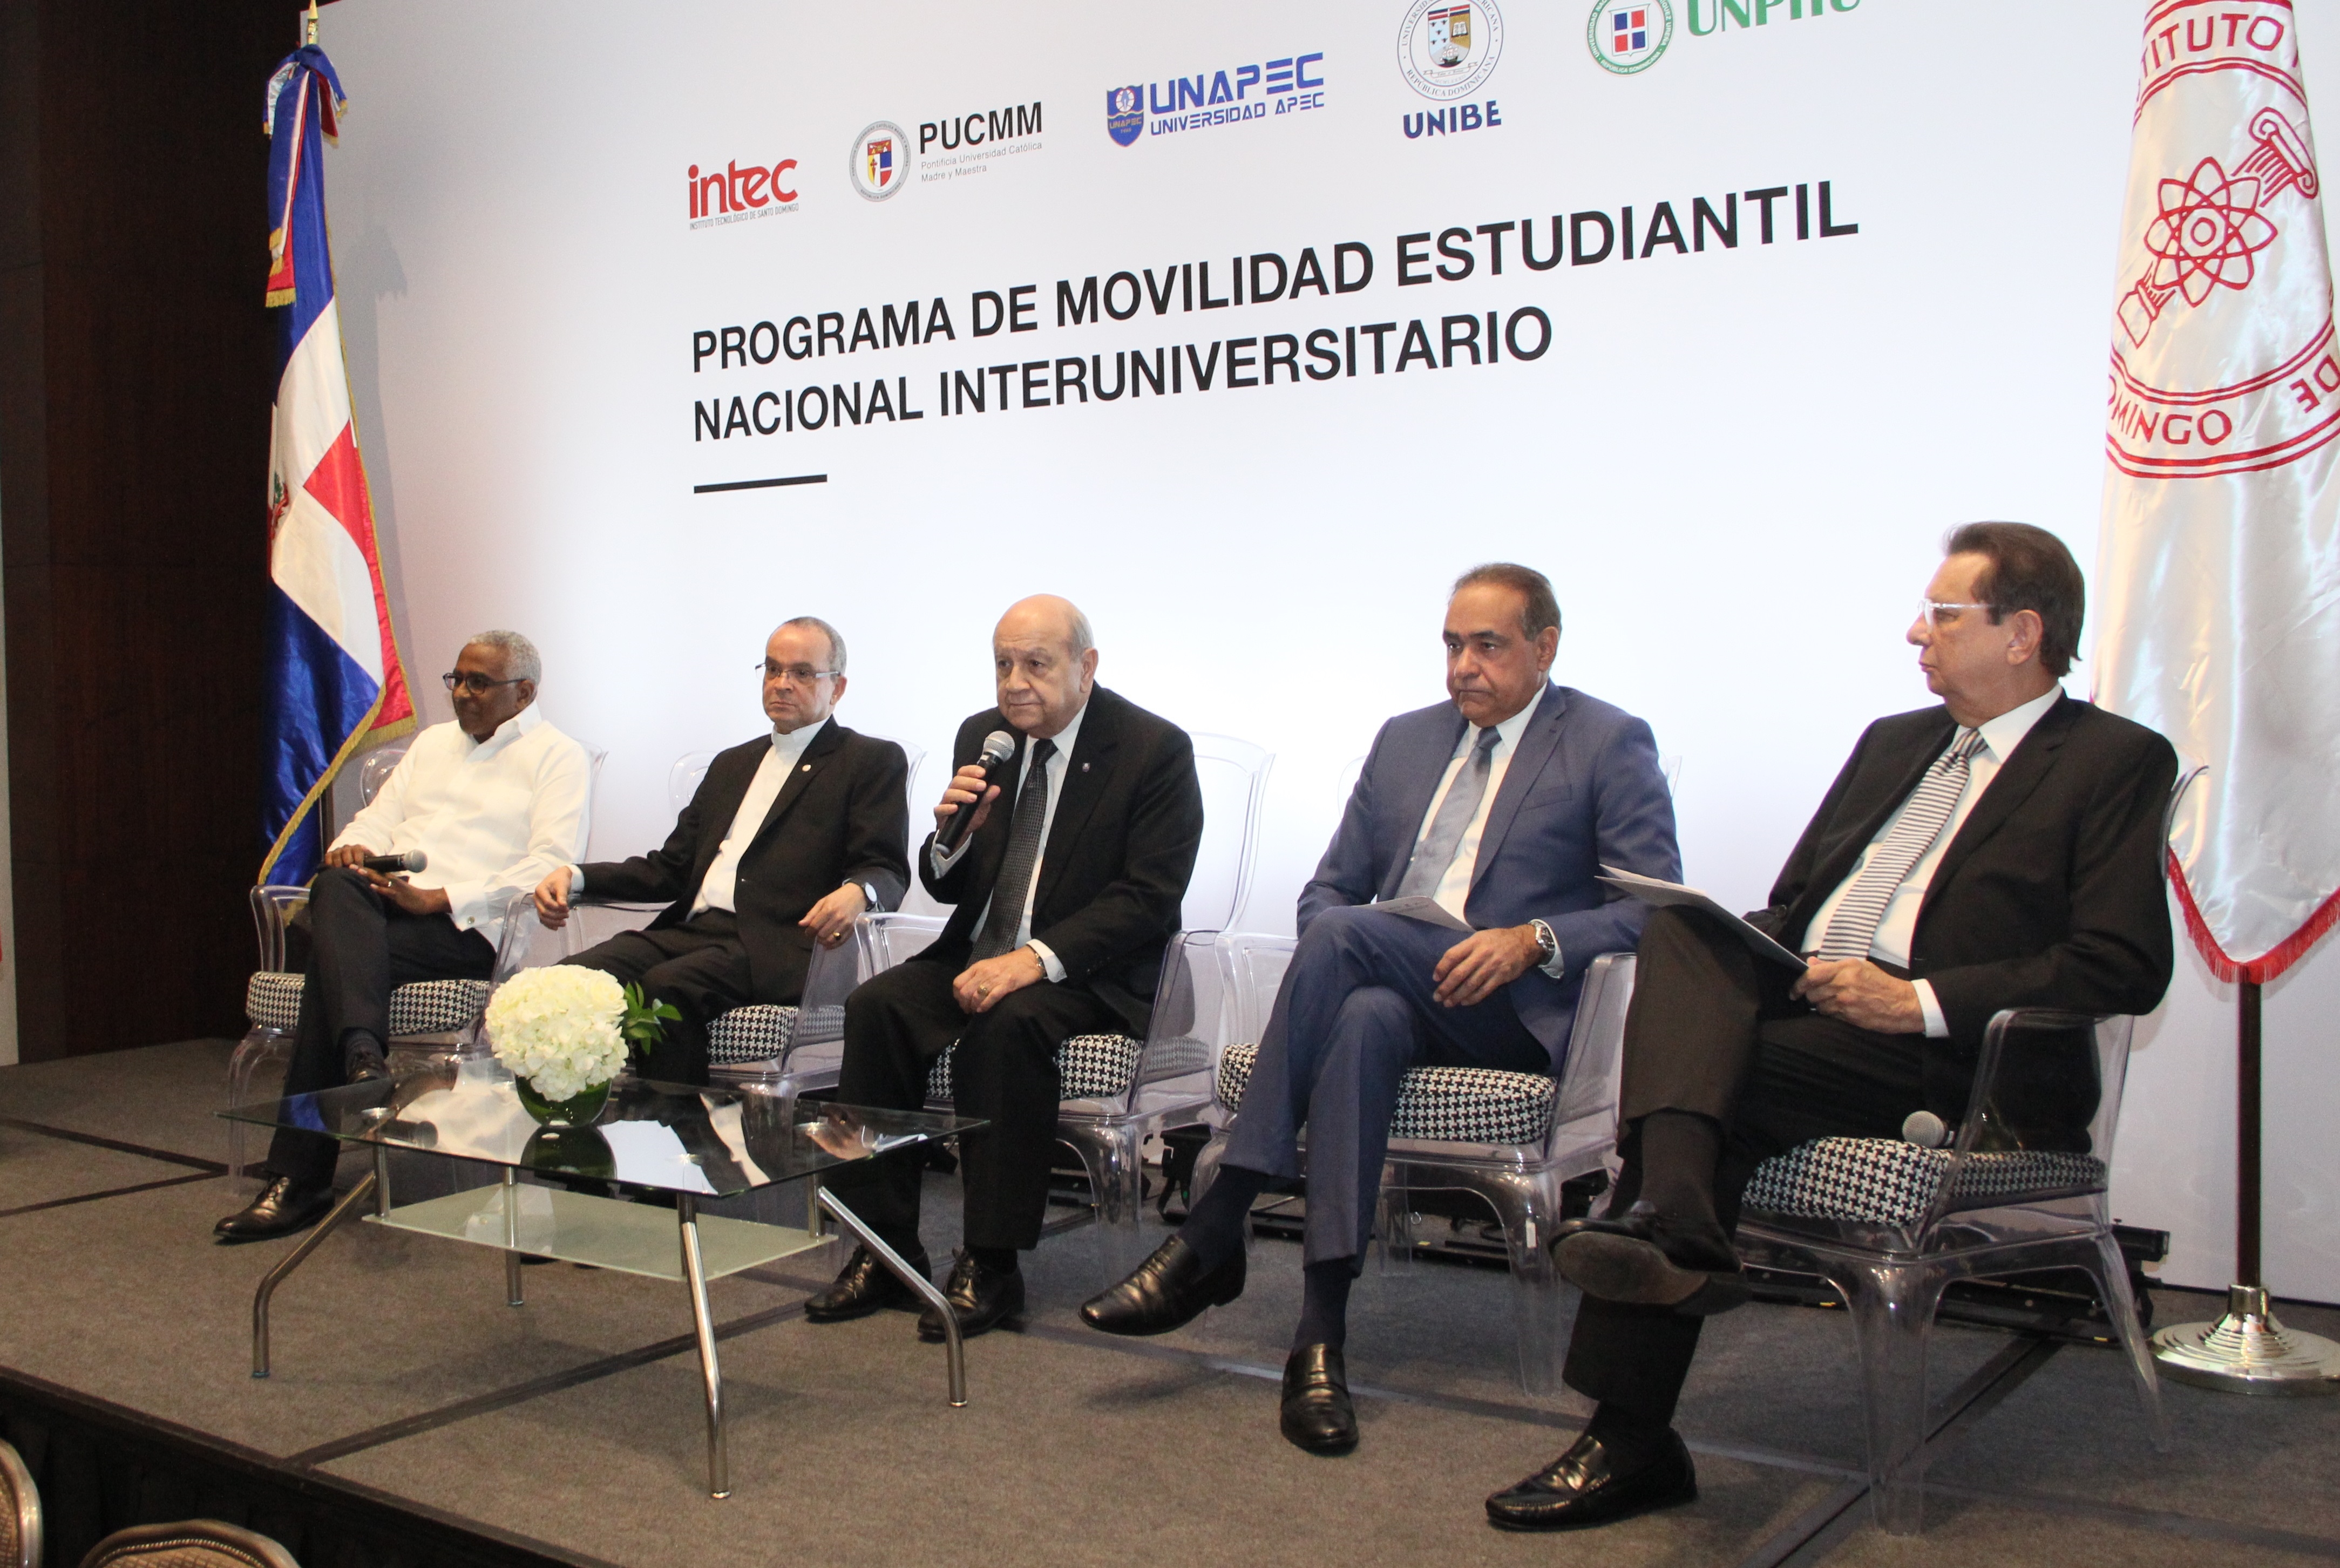 Universidades inician Programa de Movilidad Estudiantil Nacional Interuniversitario